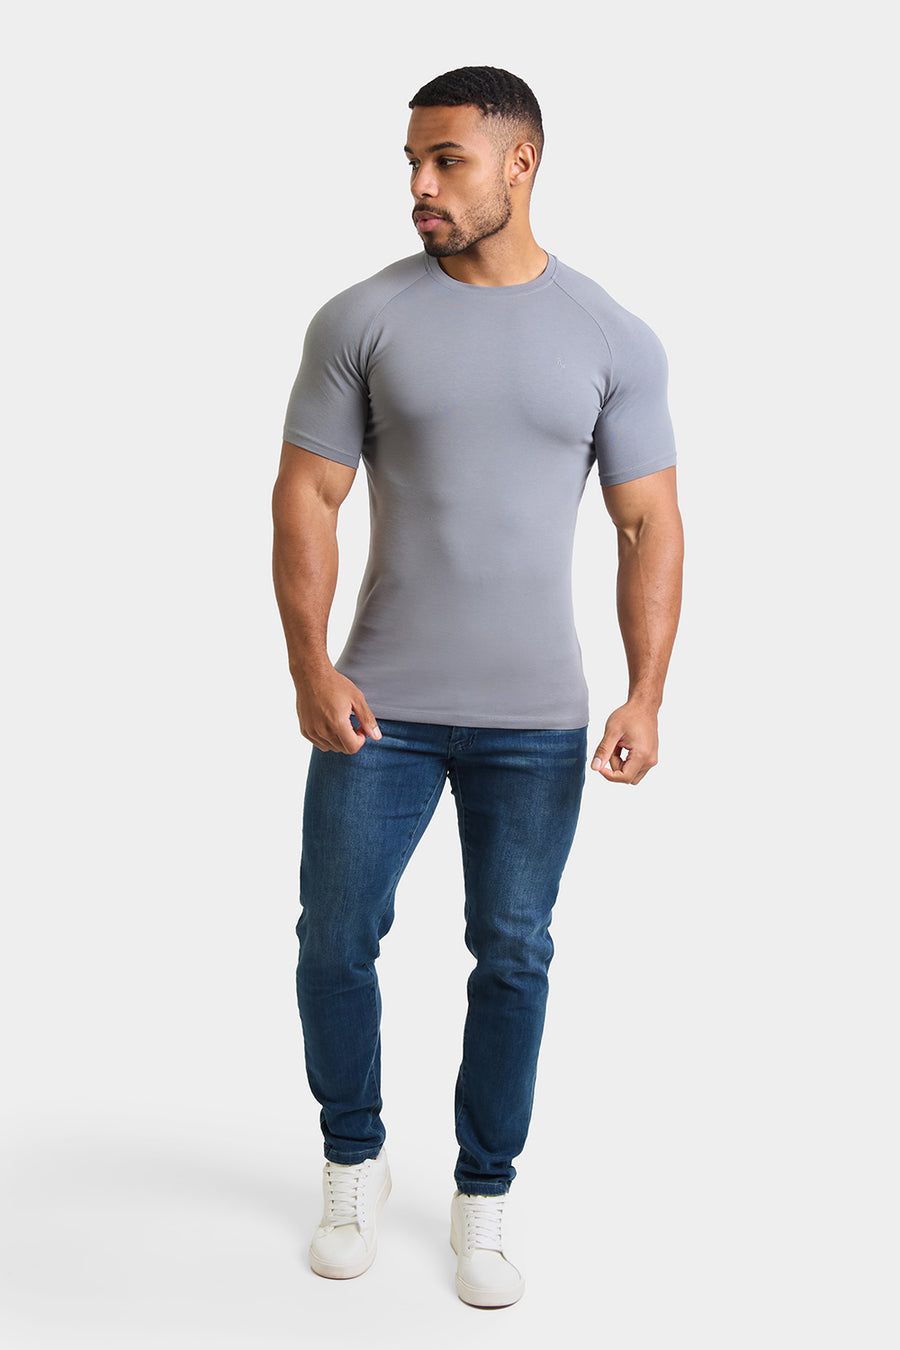 Buy Classic Shirt for men | Men's Classic Shirts | Beyours